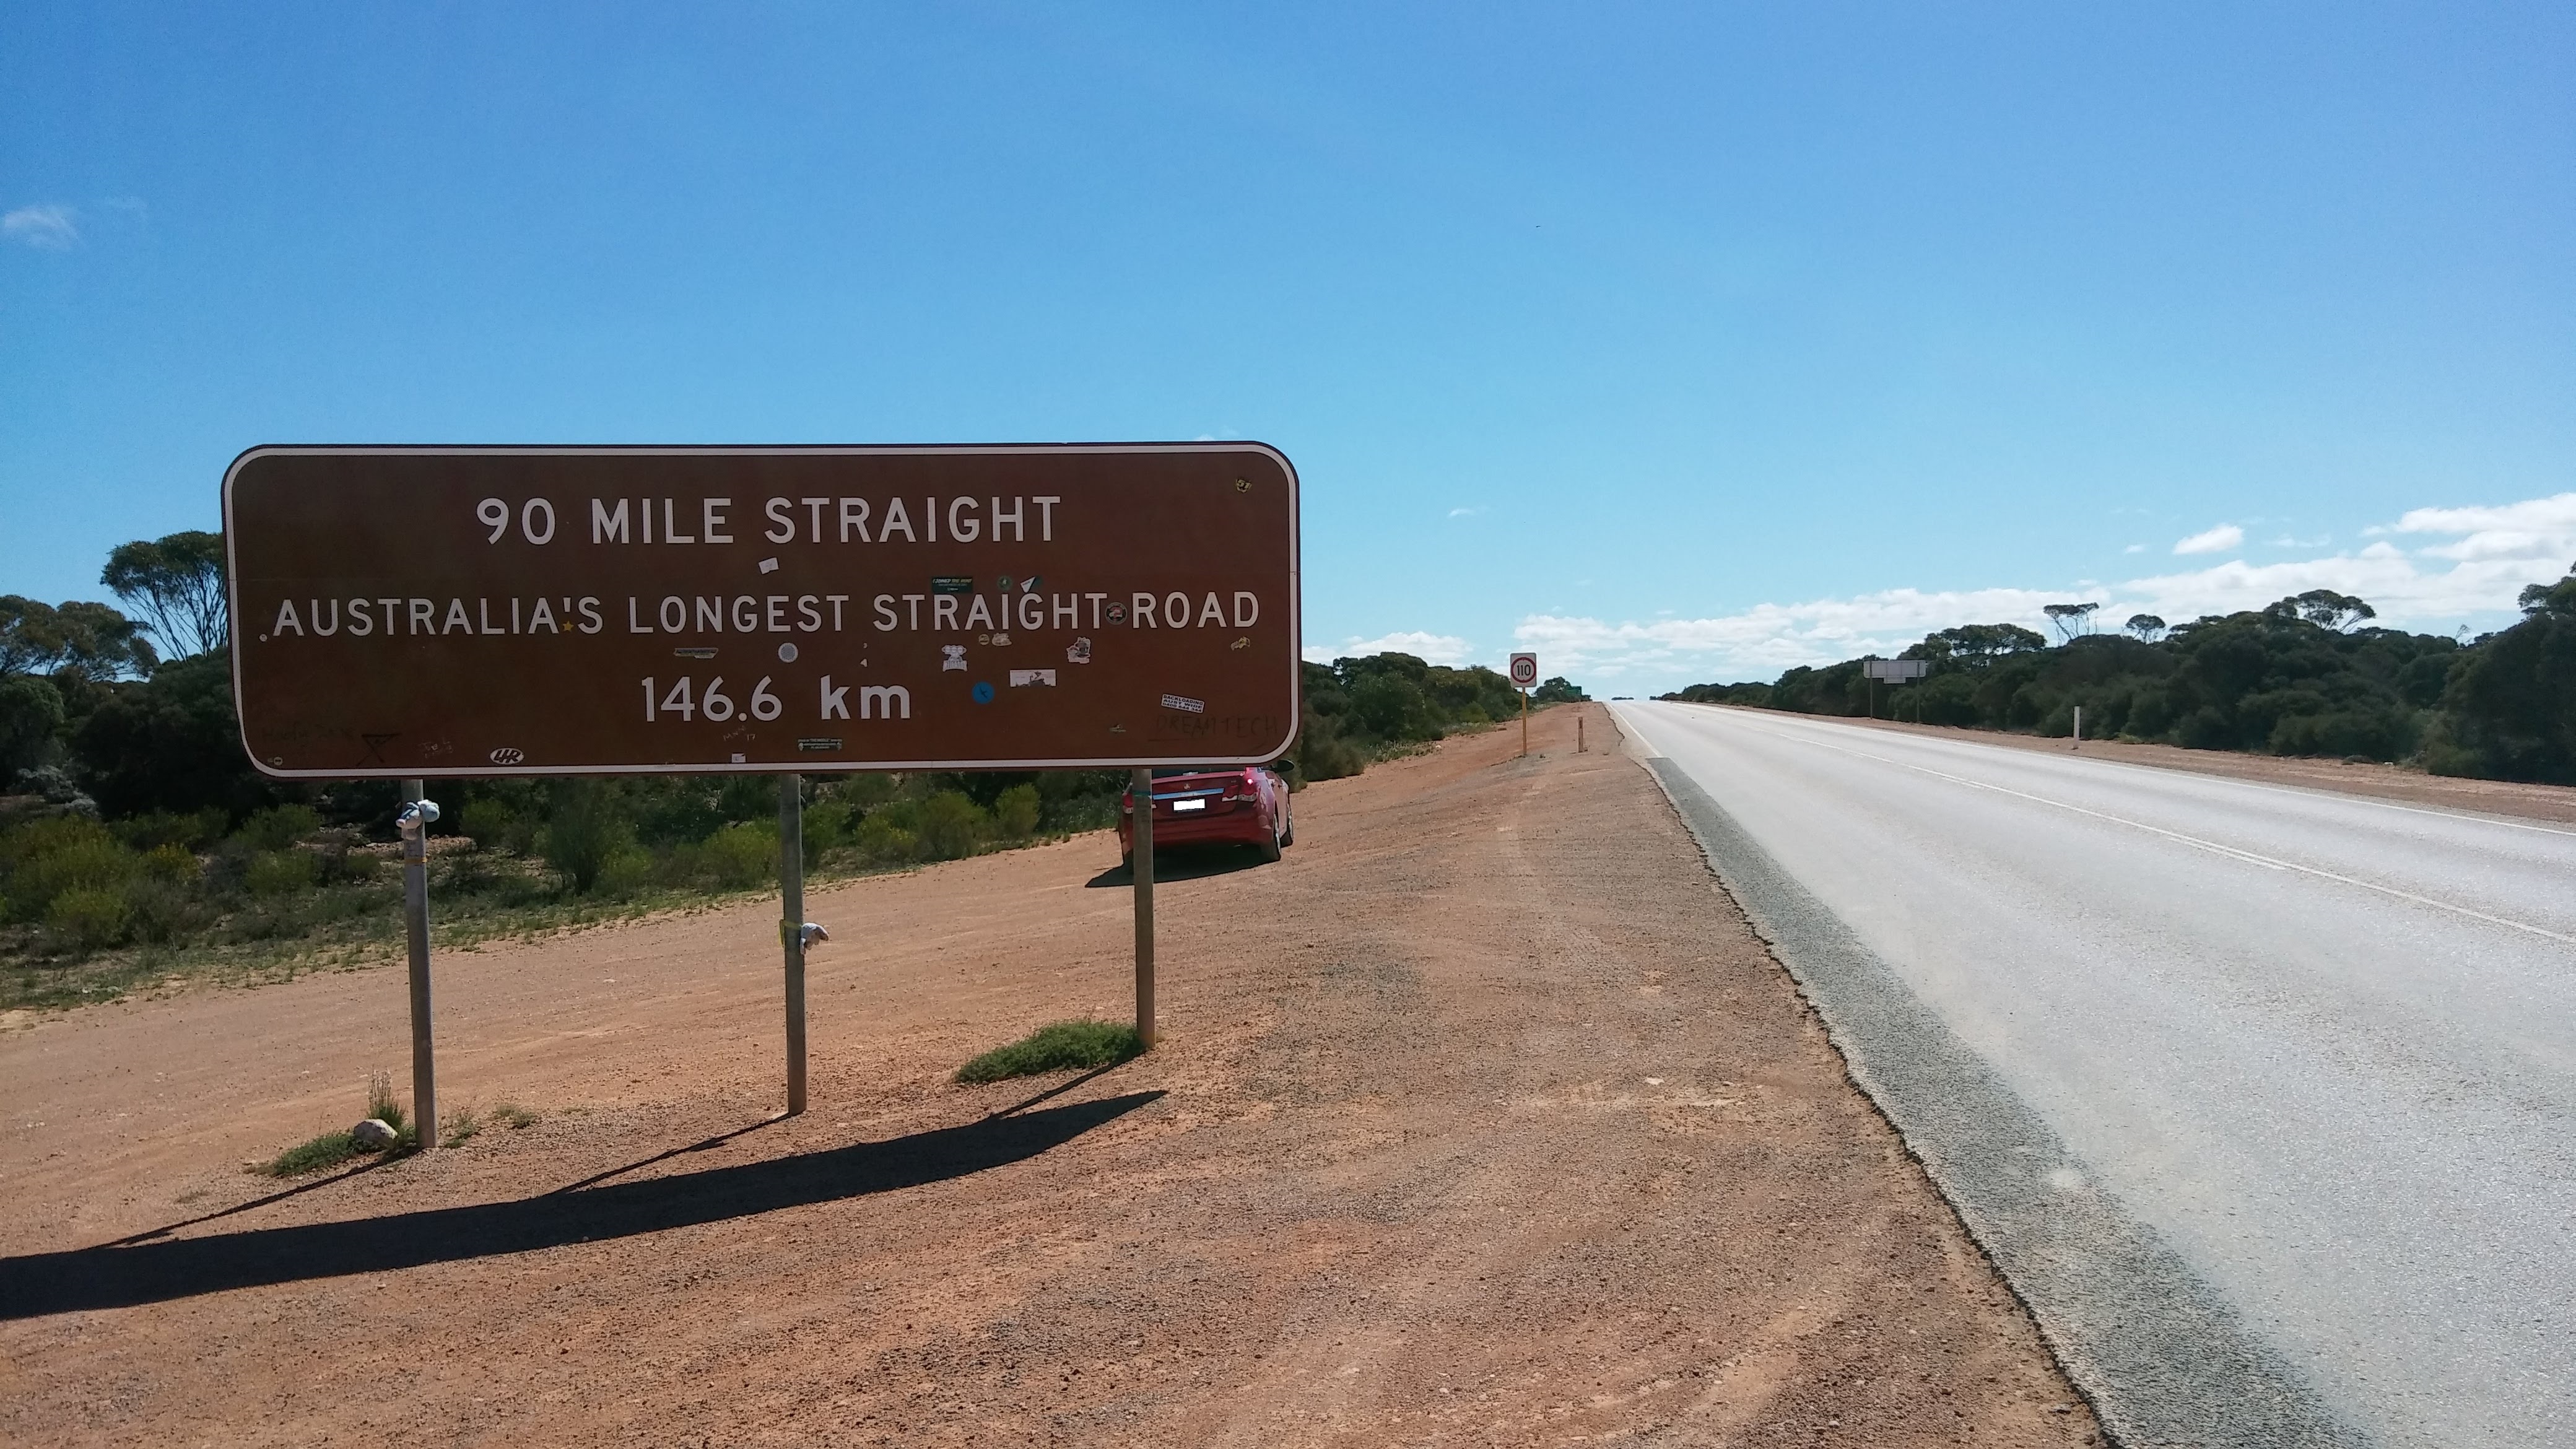 90 Mile Straight - Australia's Longest Straight Road